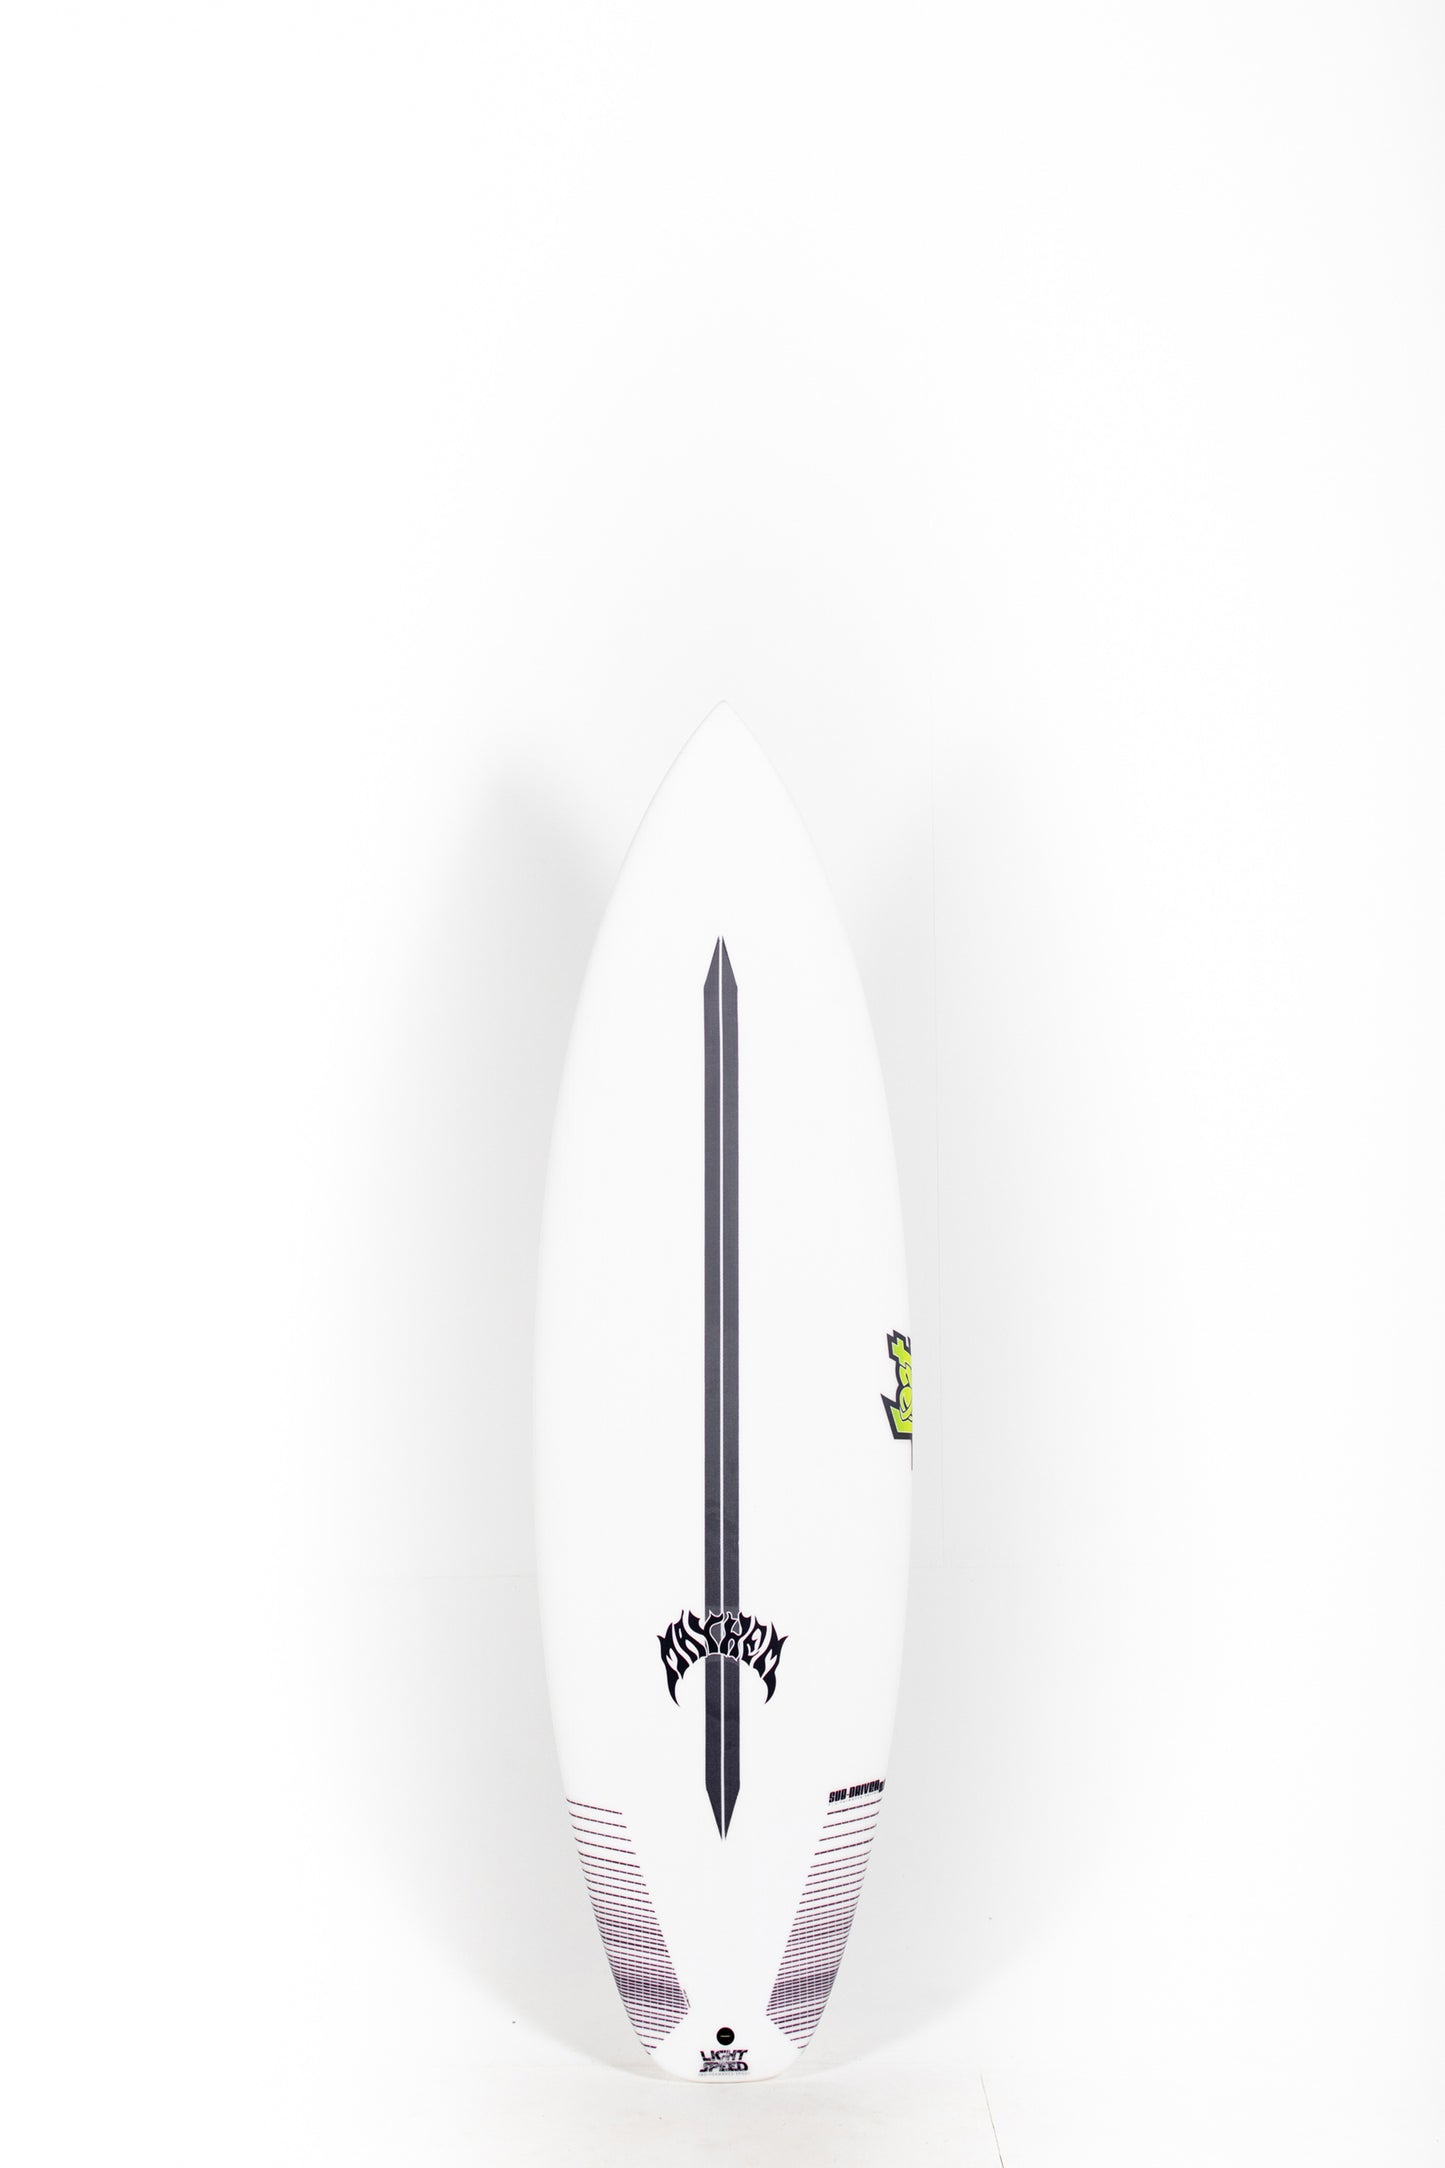 Pukas Surf Shop - Lost Surfboard - SUB DRIVER 2.0 by Matt Biolos - Light Speed - 5’11” x 19,75 x 2,45 - 31L